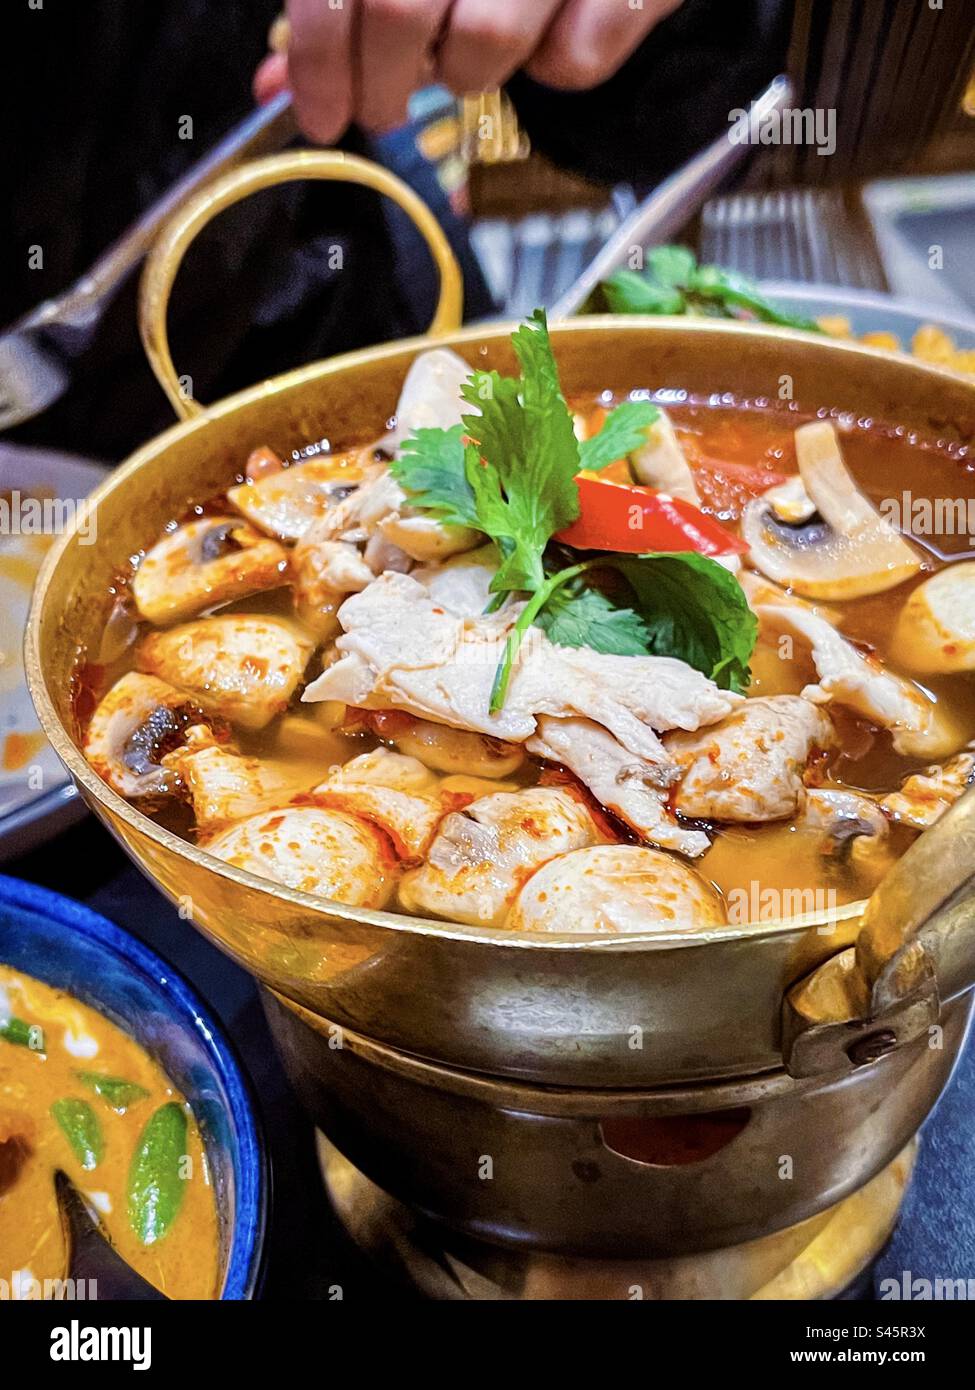 TomYang BBQ - Original Thai Grill & Hot Pot